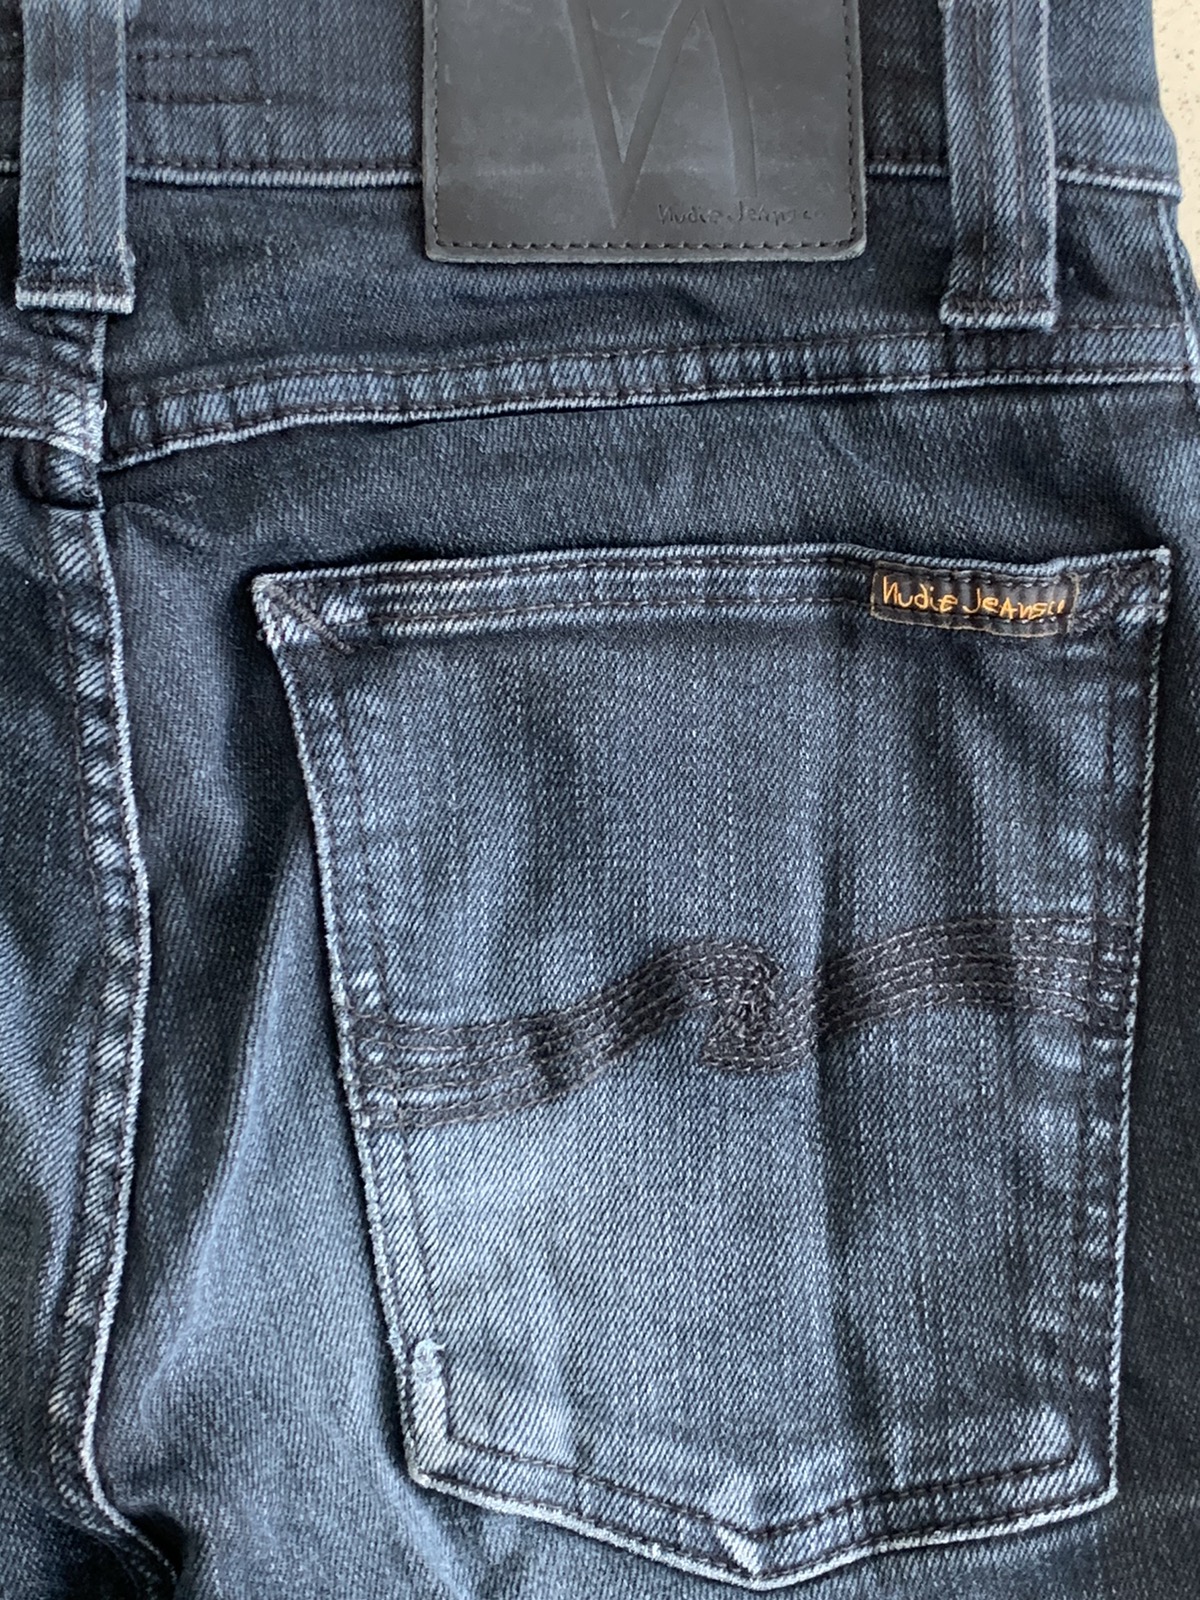 Nudie Jeans Distressed Slim-Fits Denim Pant - 5